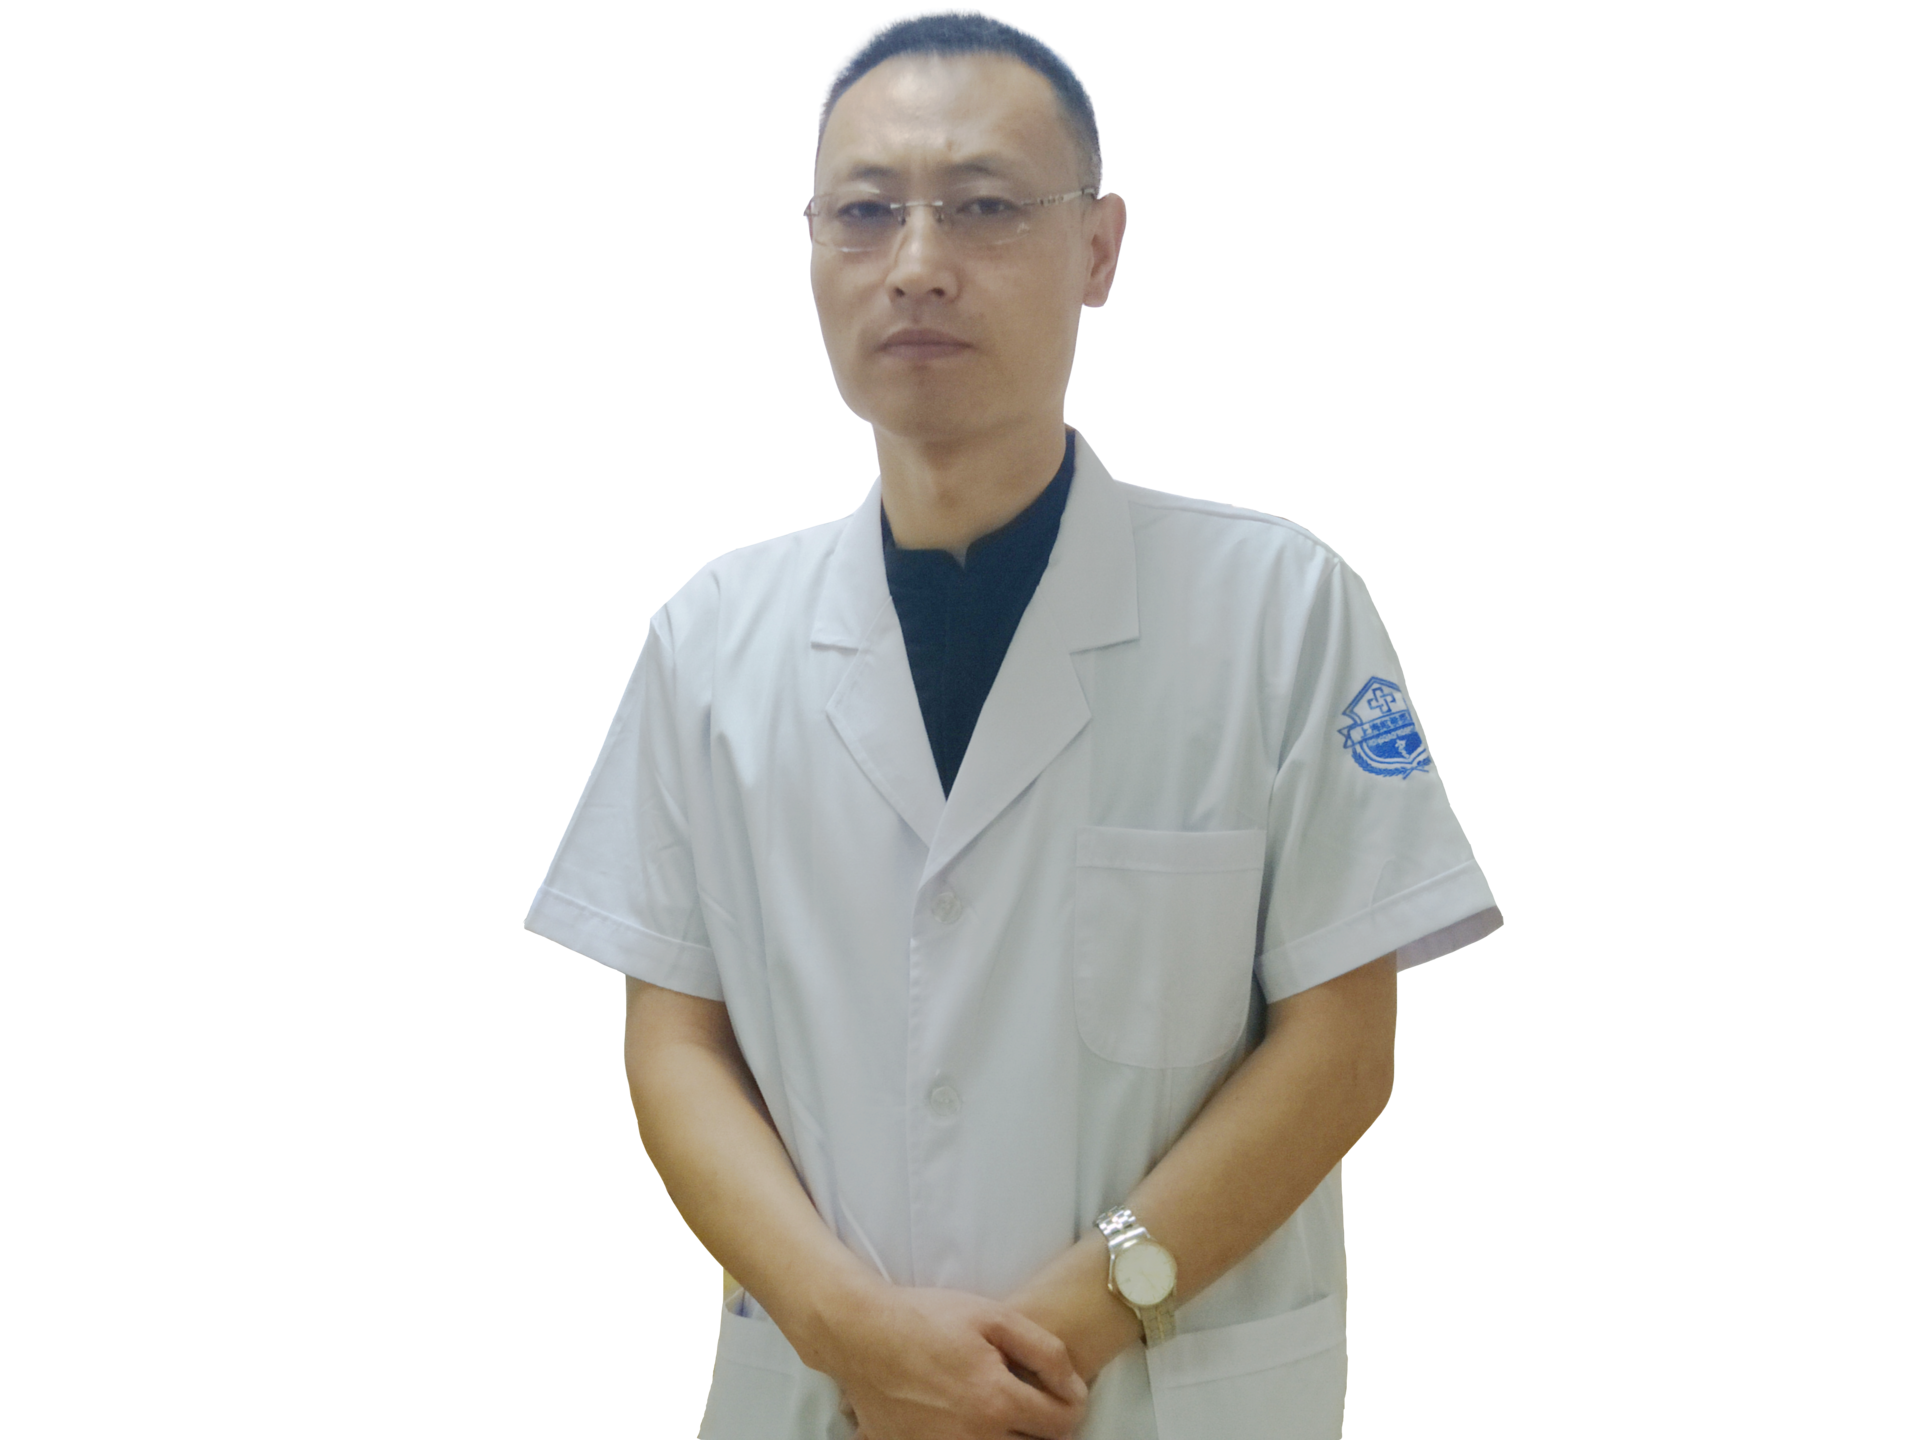 張文波(上海虹橋醫院醫生)